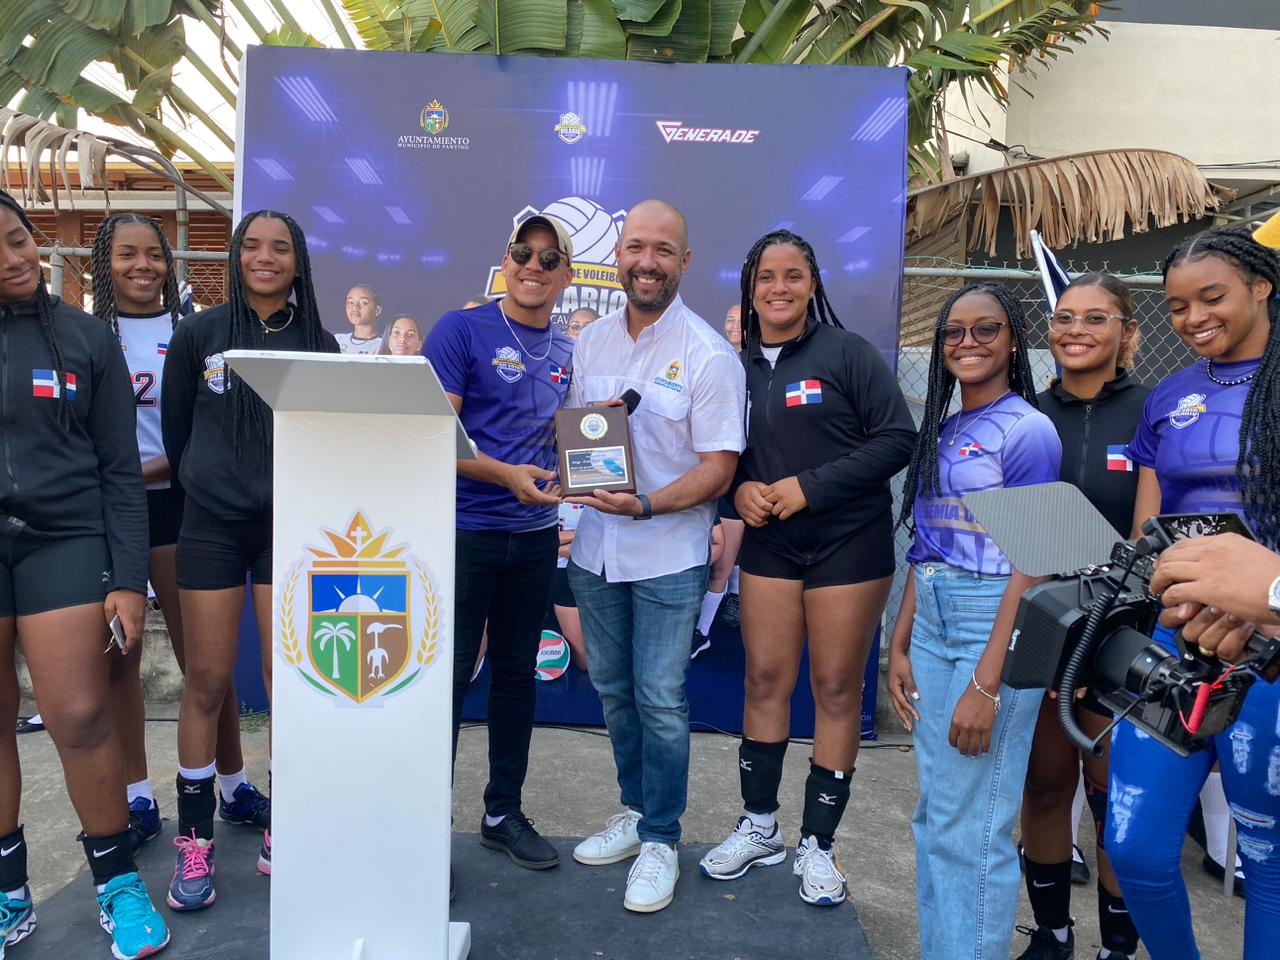 Academia de Voleibol Hilario Celebra Torneo Internacional de Voleibol del Caribe en Fantino